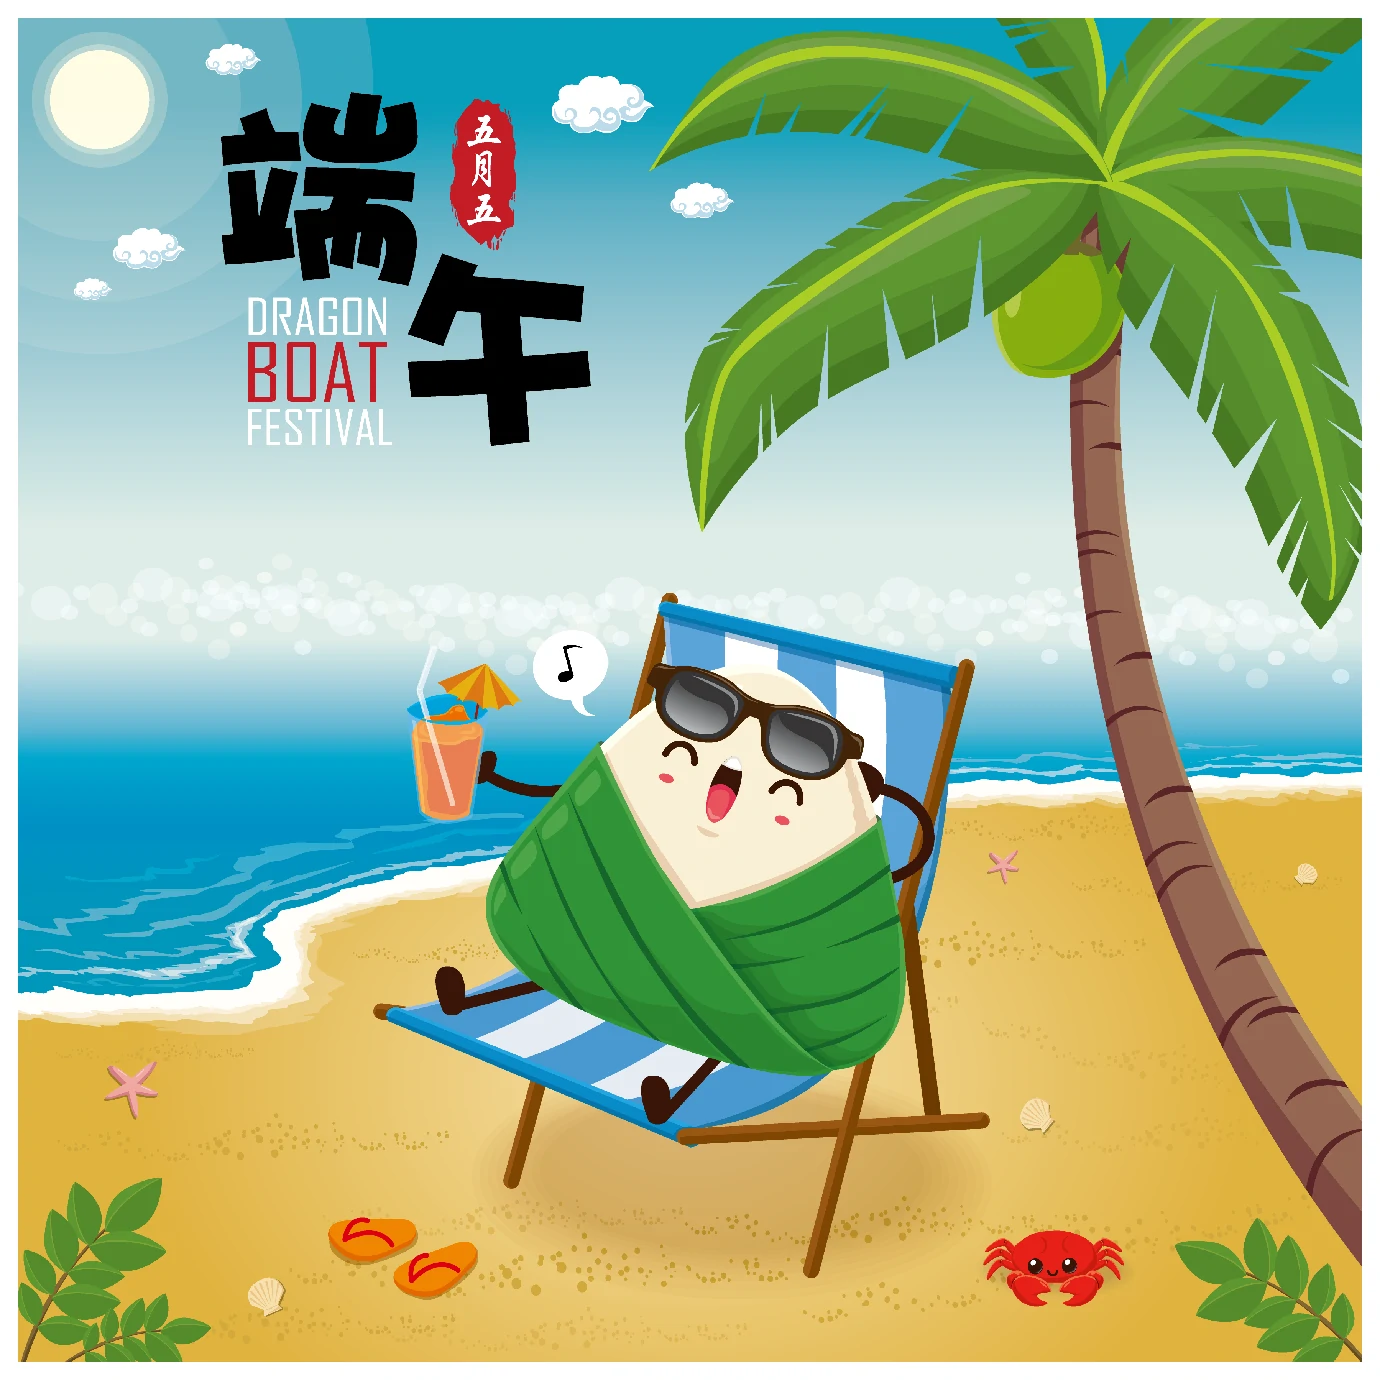 中国传统节日卡通手绘端午节赛龙舟粽子插画海报AI矢量设计素材【072】